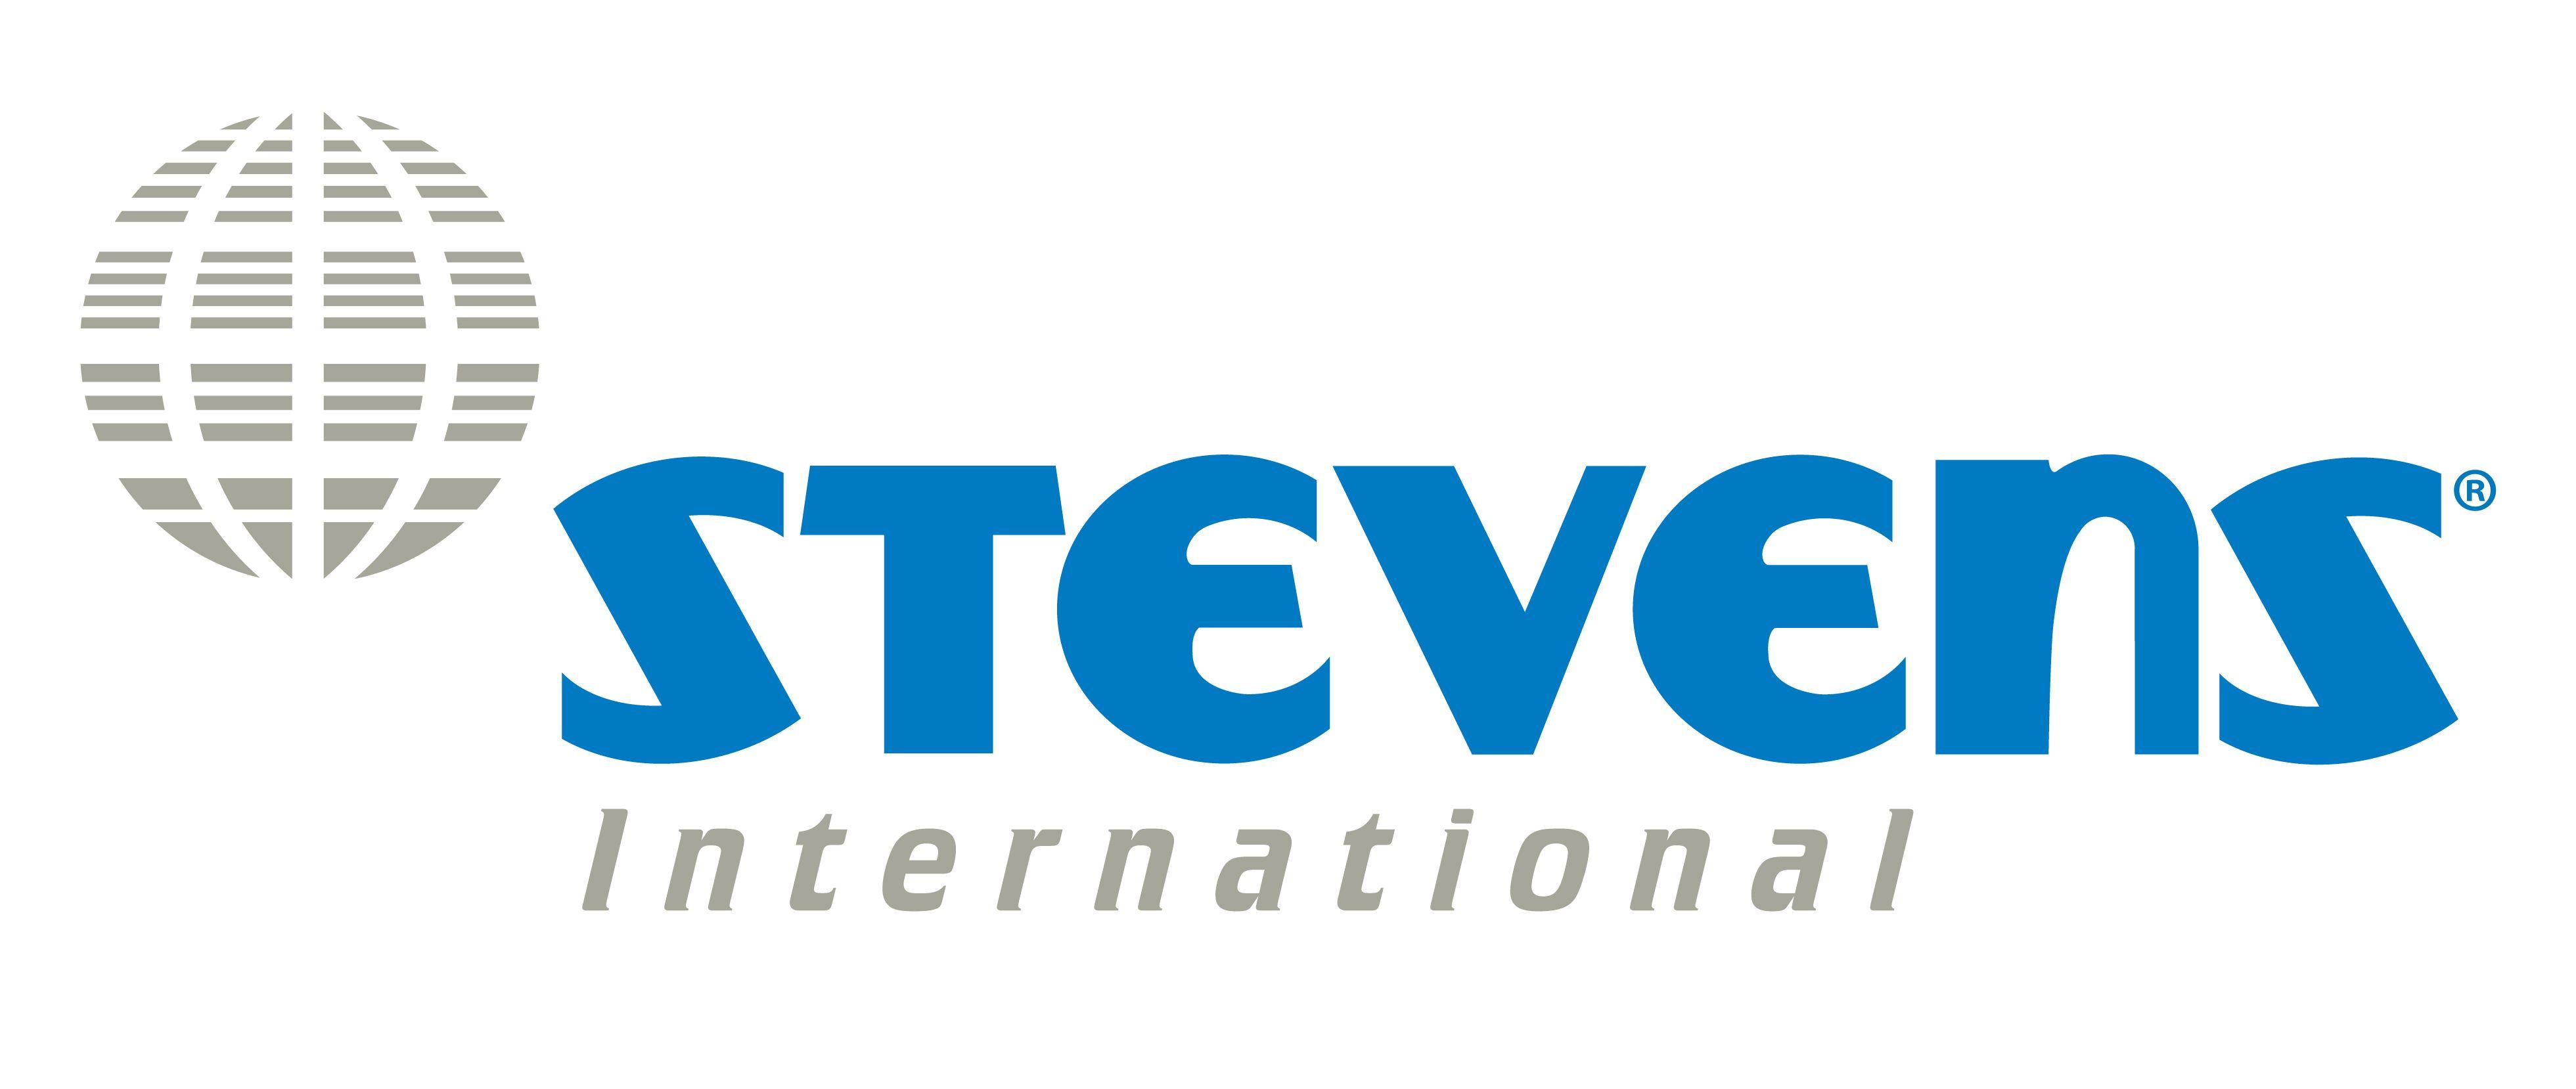 Stevens Logo - Interstate Agent Logo. Stevens Worldwide Van Lines